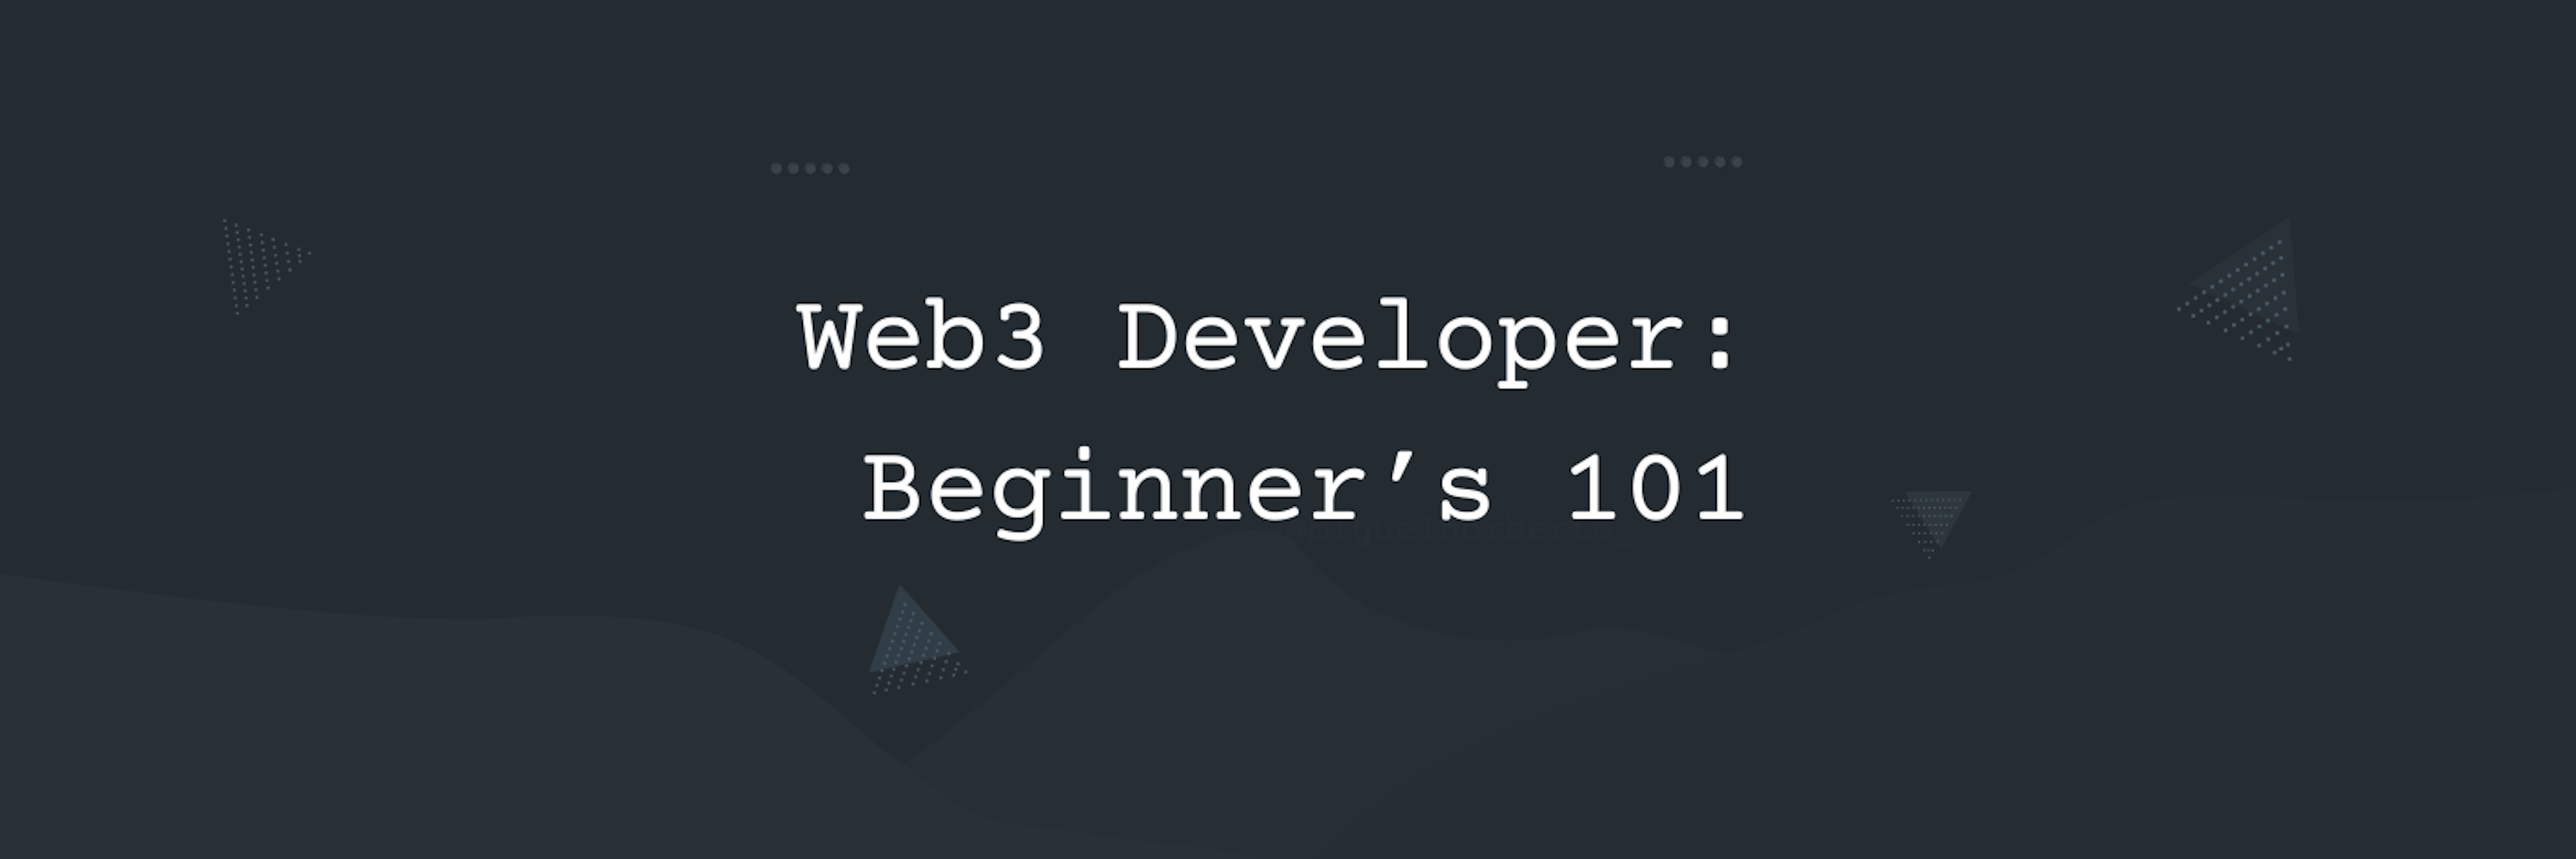 Web3 Developer: Beginner’s 101